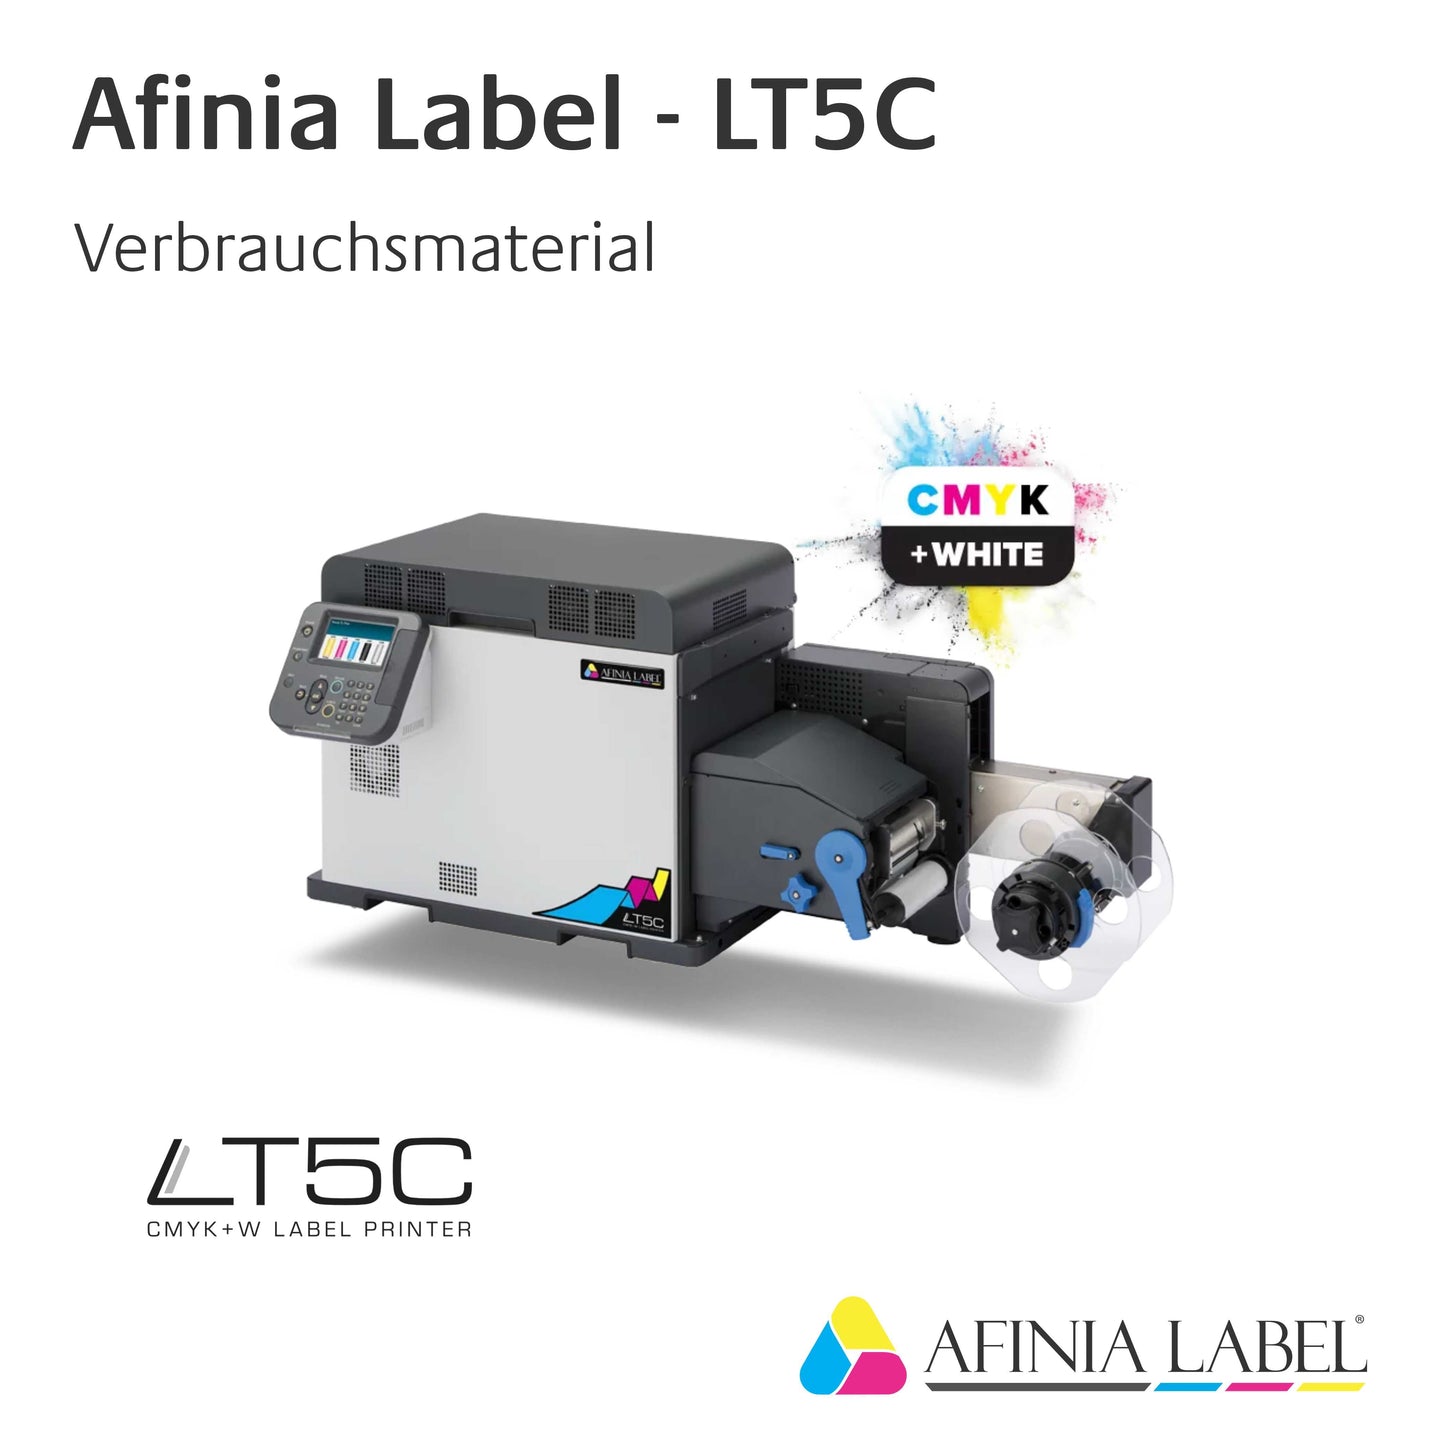 Afinia Label LT5C - Toner / Trommel - Gelb